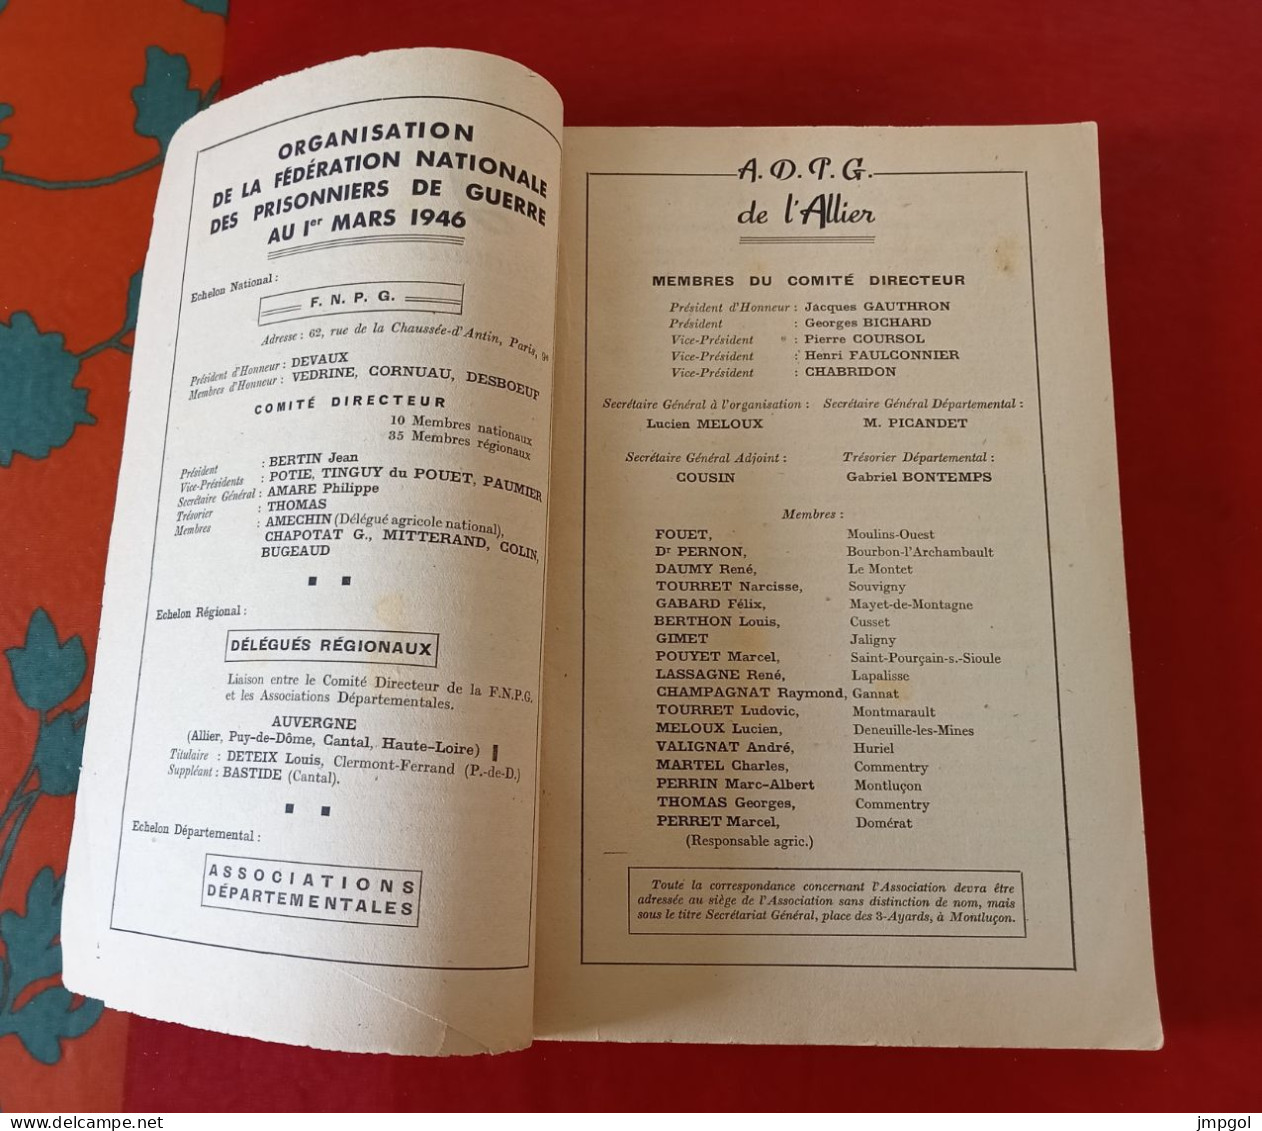 Annuaire Des Prisonniers De Guerre De L'Allier Par Communes 1946 - 1939-45